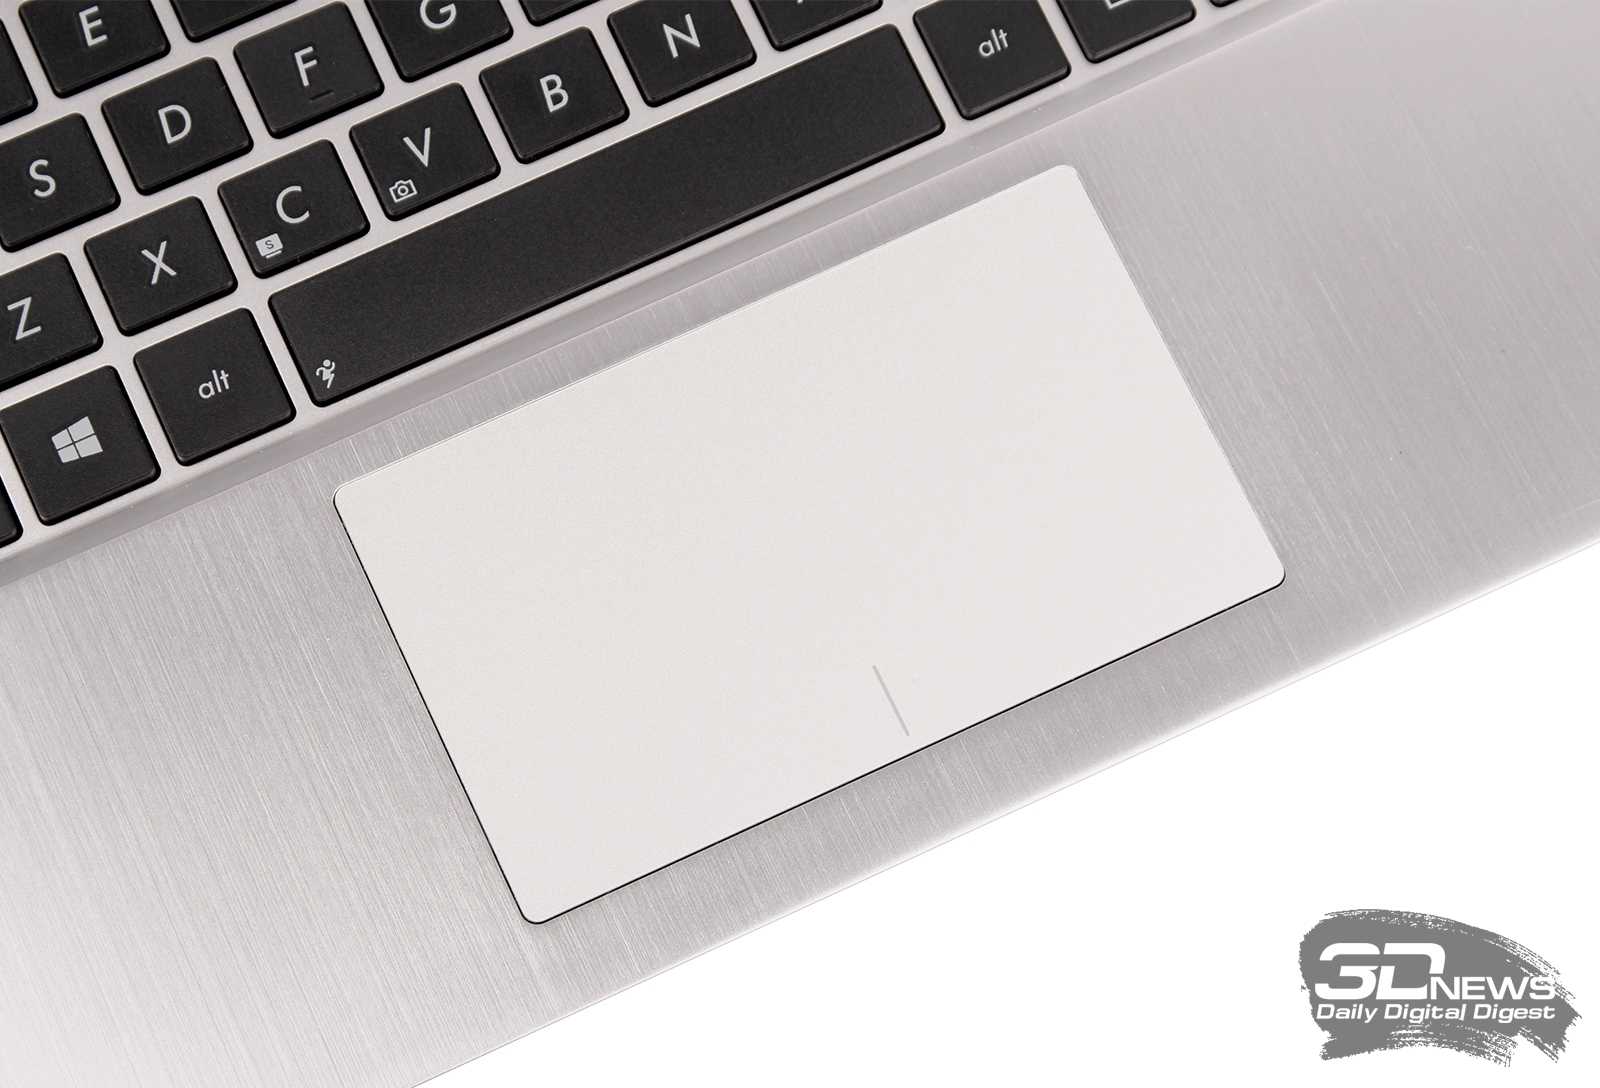 Asus vivobook x202e: недорогой и компактный ноутбук с сенсорным экраном / ноутбуки и пк